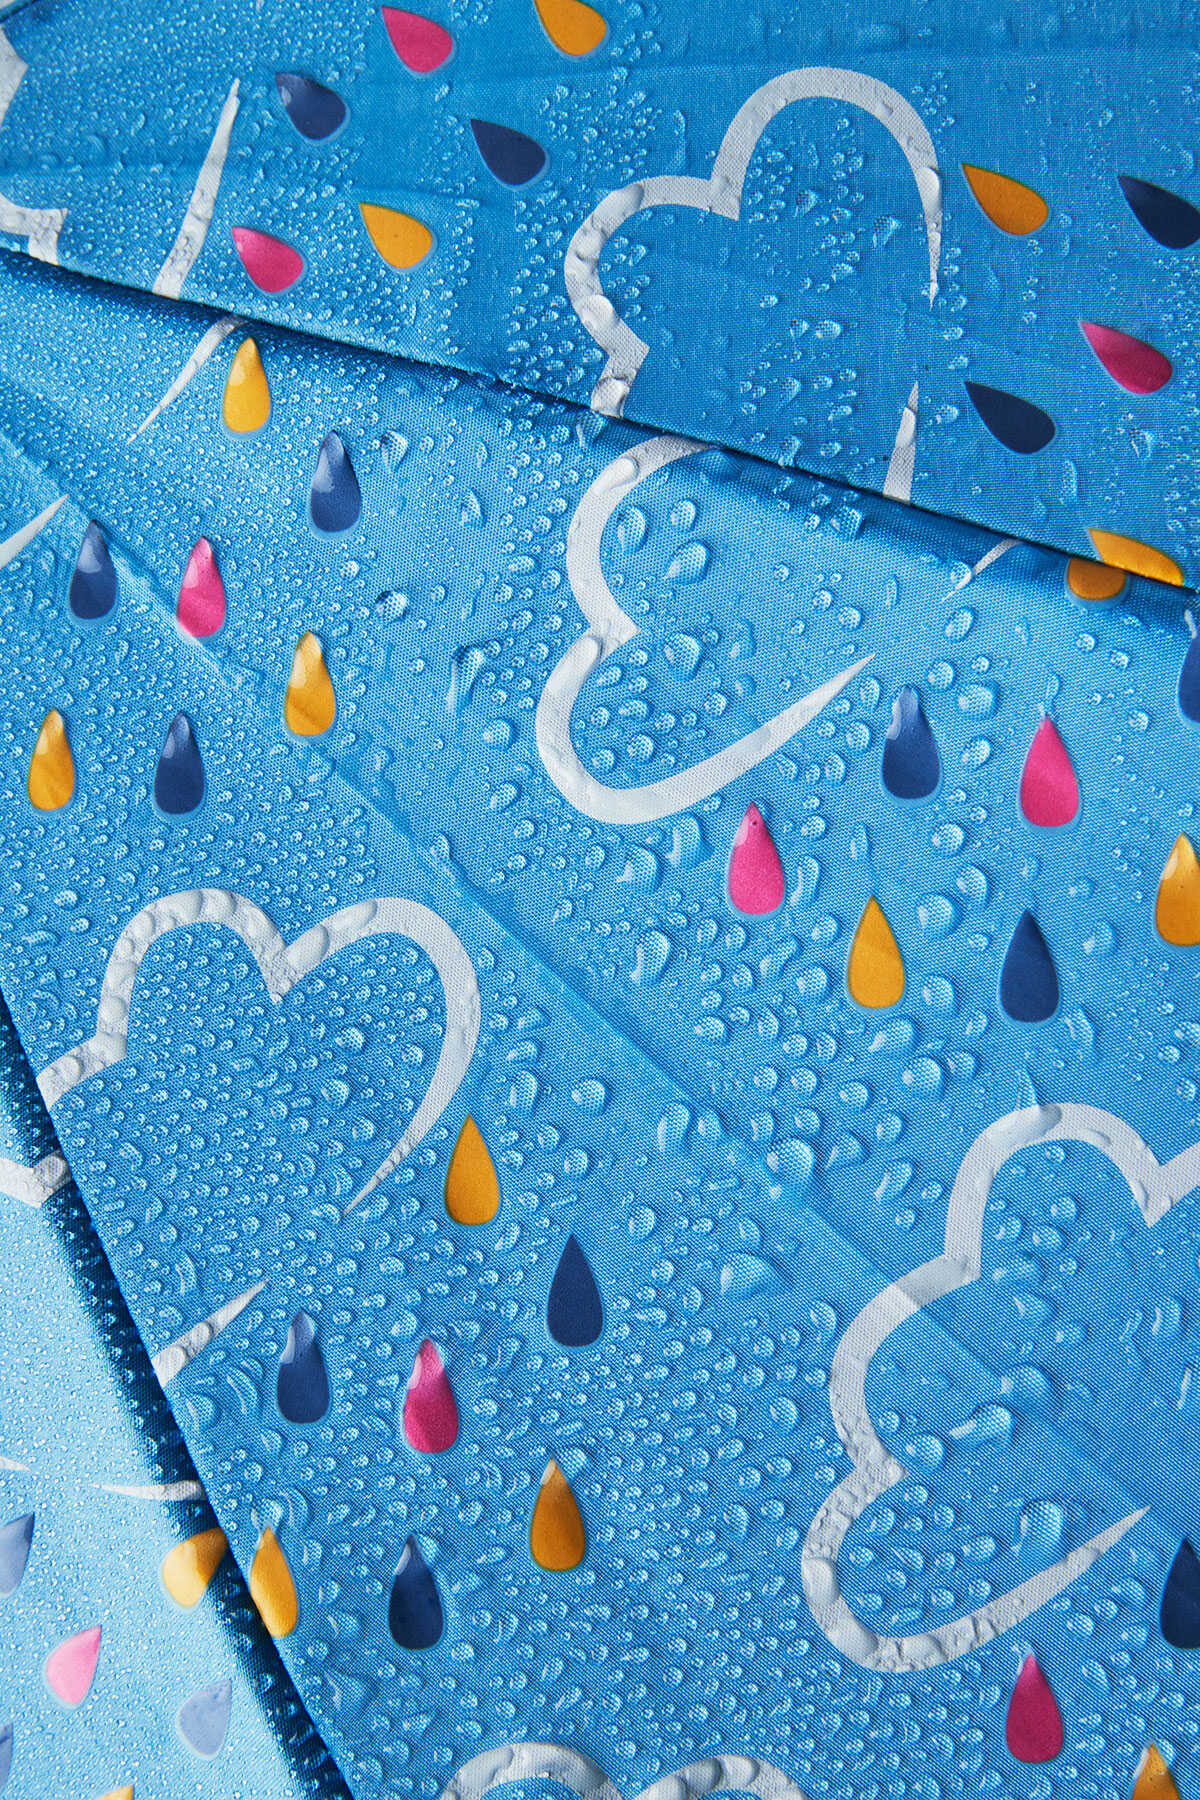 Umbrellas - Little Kids Colour Revealing